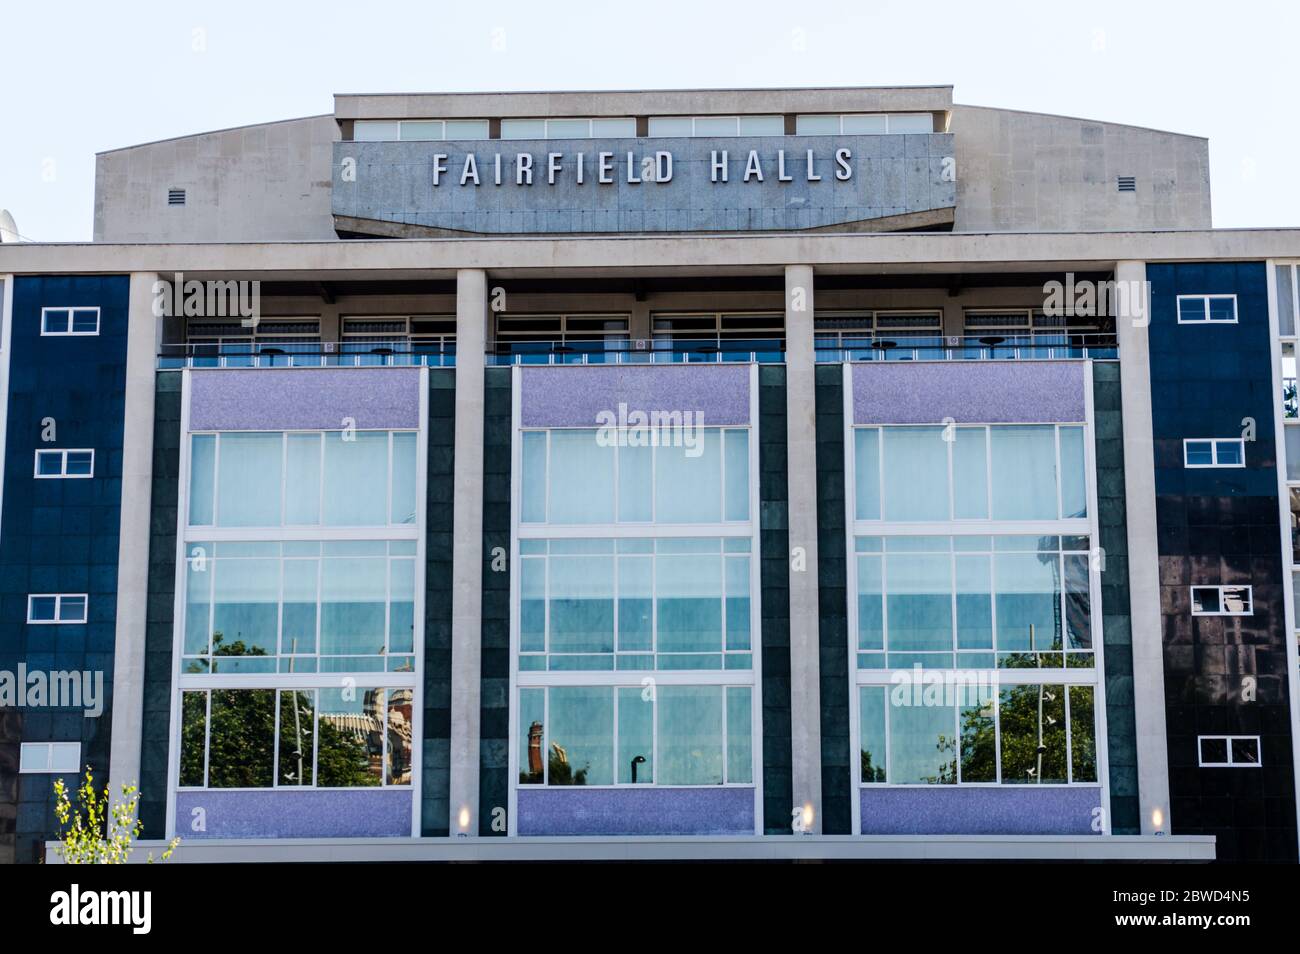 Fairfield halls in Croydon Stock Photo